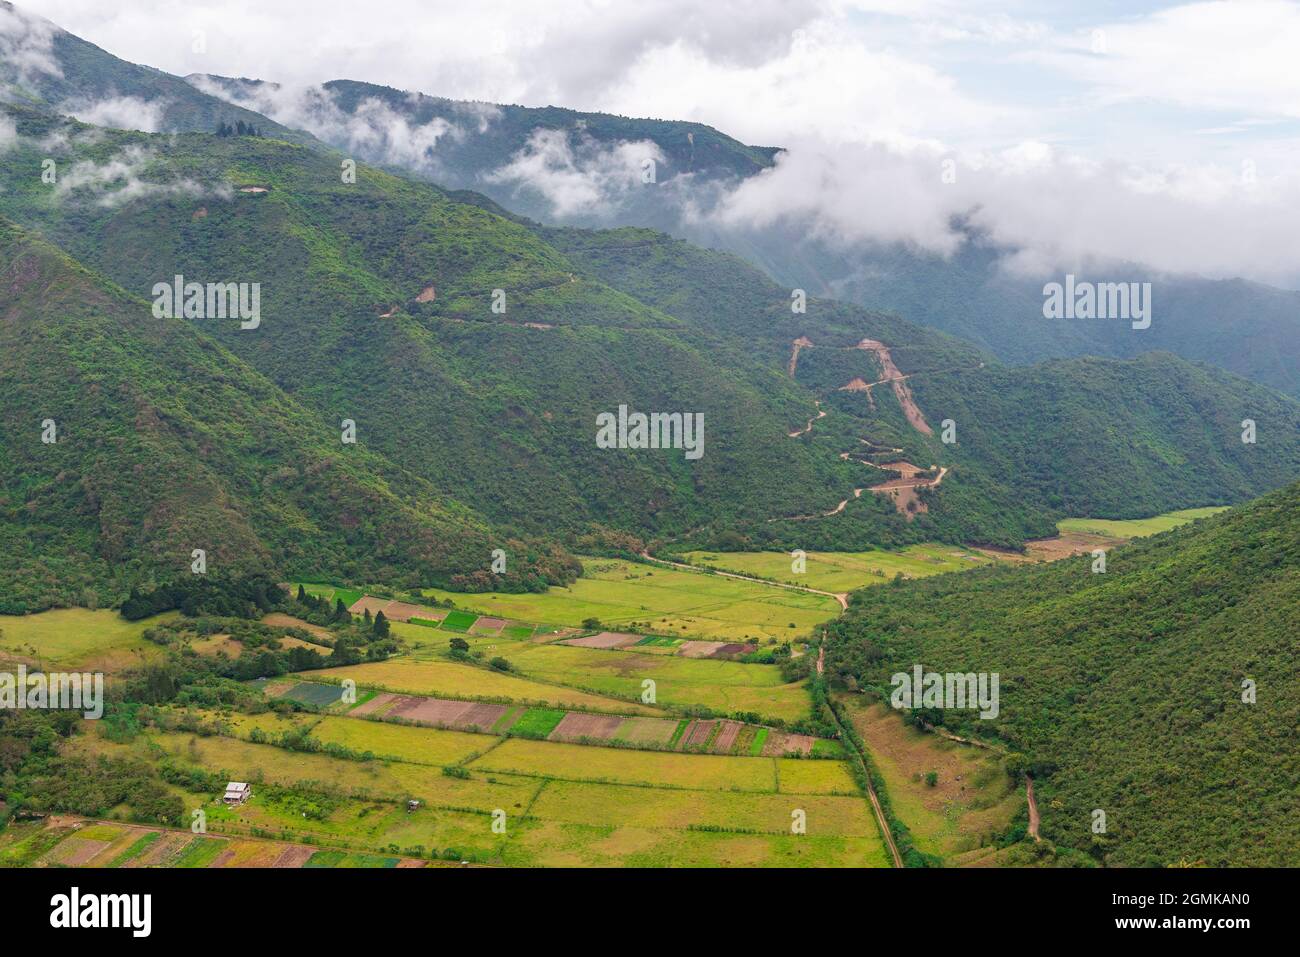 Landwirtschaftliche Felder indigener Gemeinschaften in einem Tal des Vulkankrrater Pululahua, Quito, Ecuador. Stockfoto